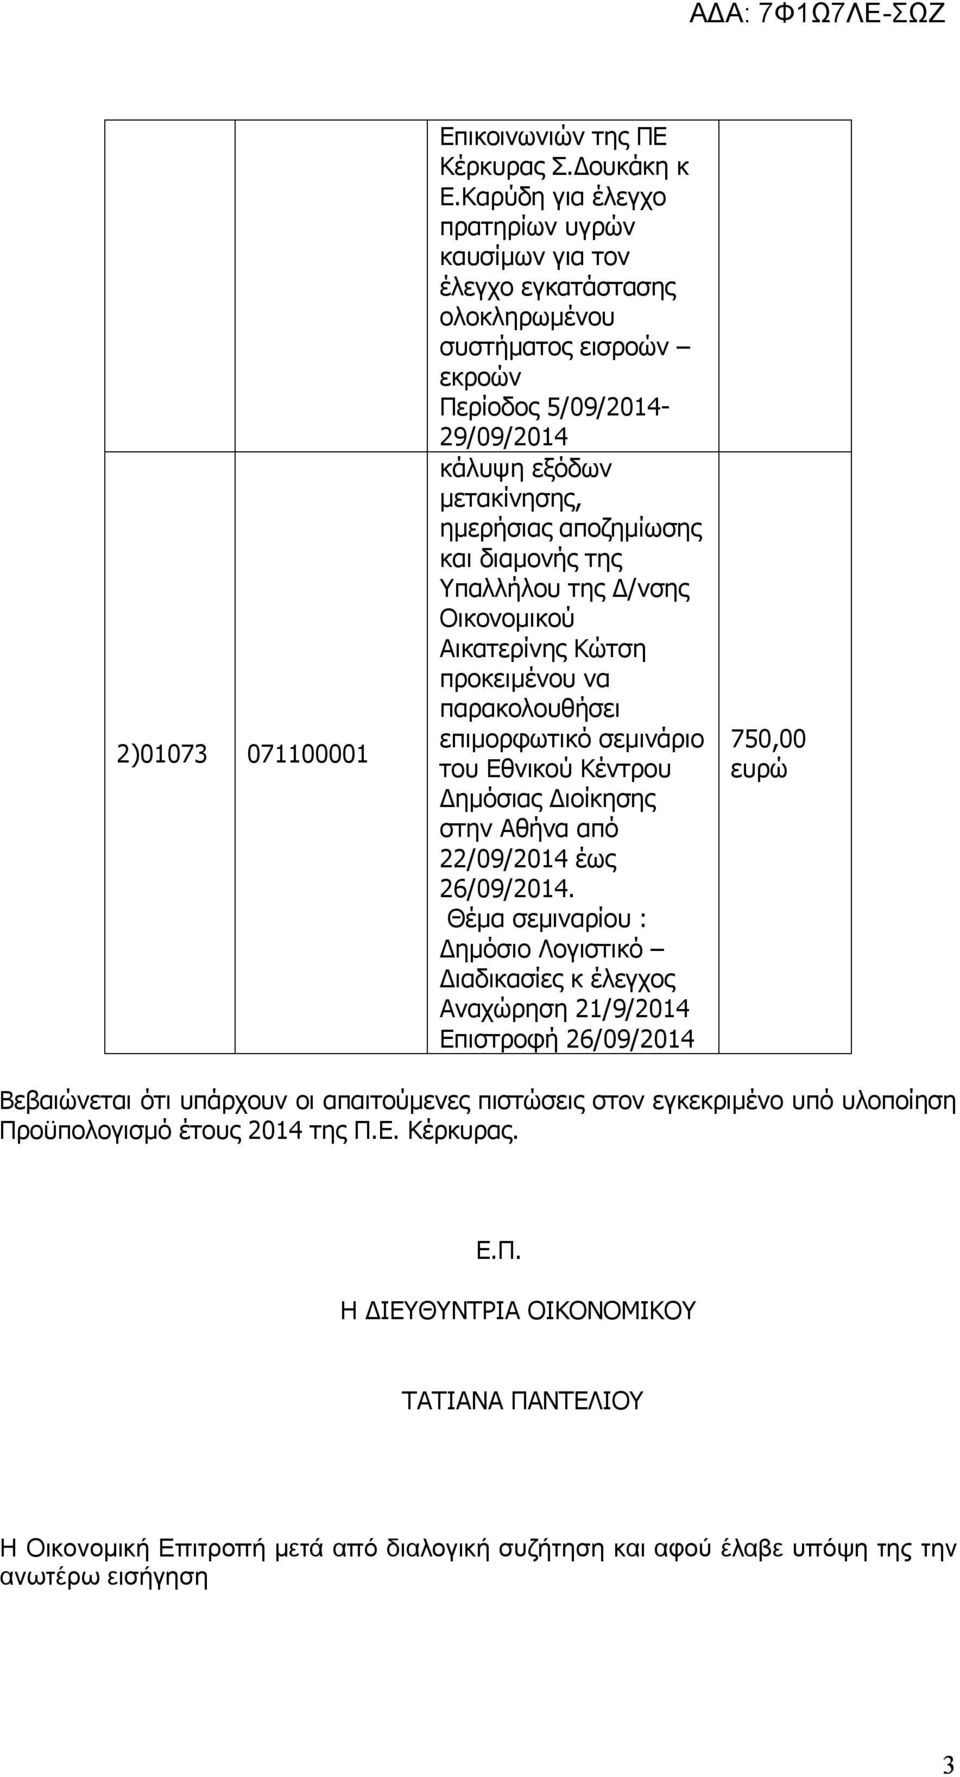 διαμονής της Υπαλλήλου της Δ/νσης Οικονομικού Αικατερίνης Κώτση προκειμένου να παρακολουθήσει επιμορφωτικό σεμινάριο του Εθνικού Κέντρου Δημόσιας Διοίκησης στην Αθήνα από 22/09/2014 έως 26/09/2014.